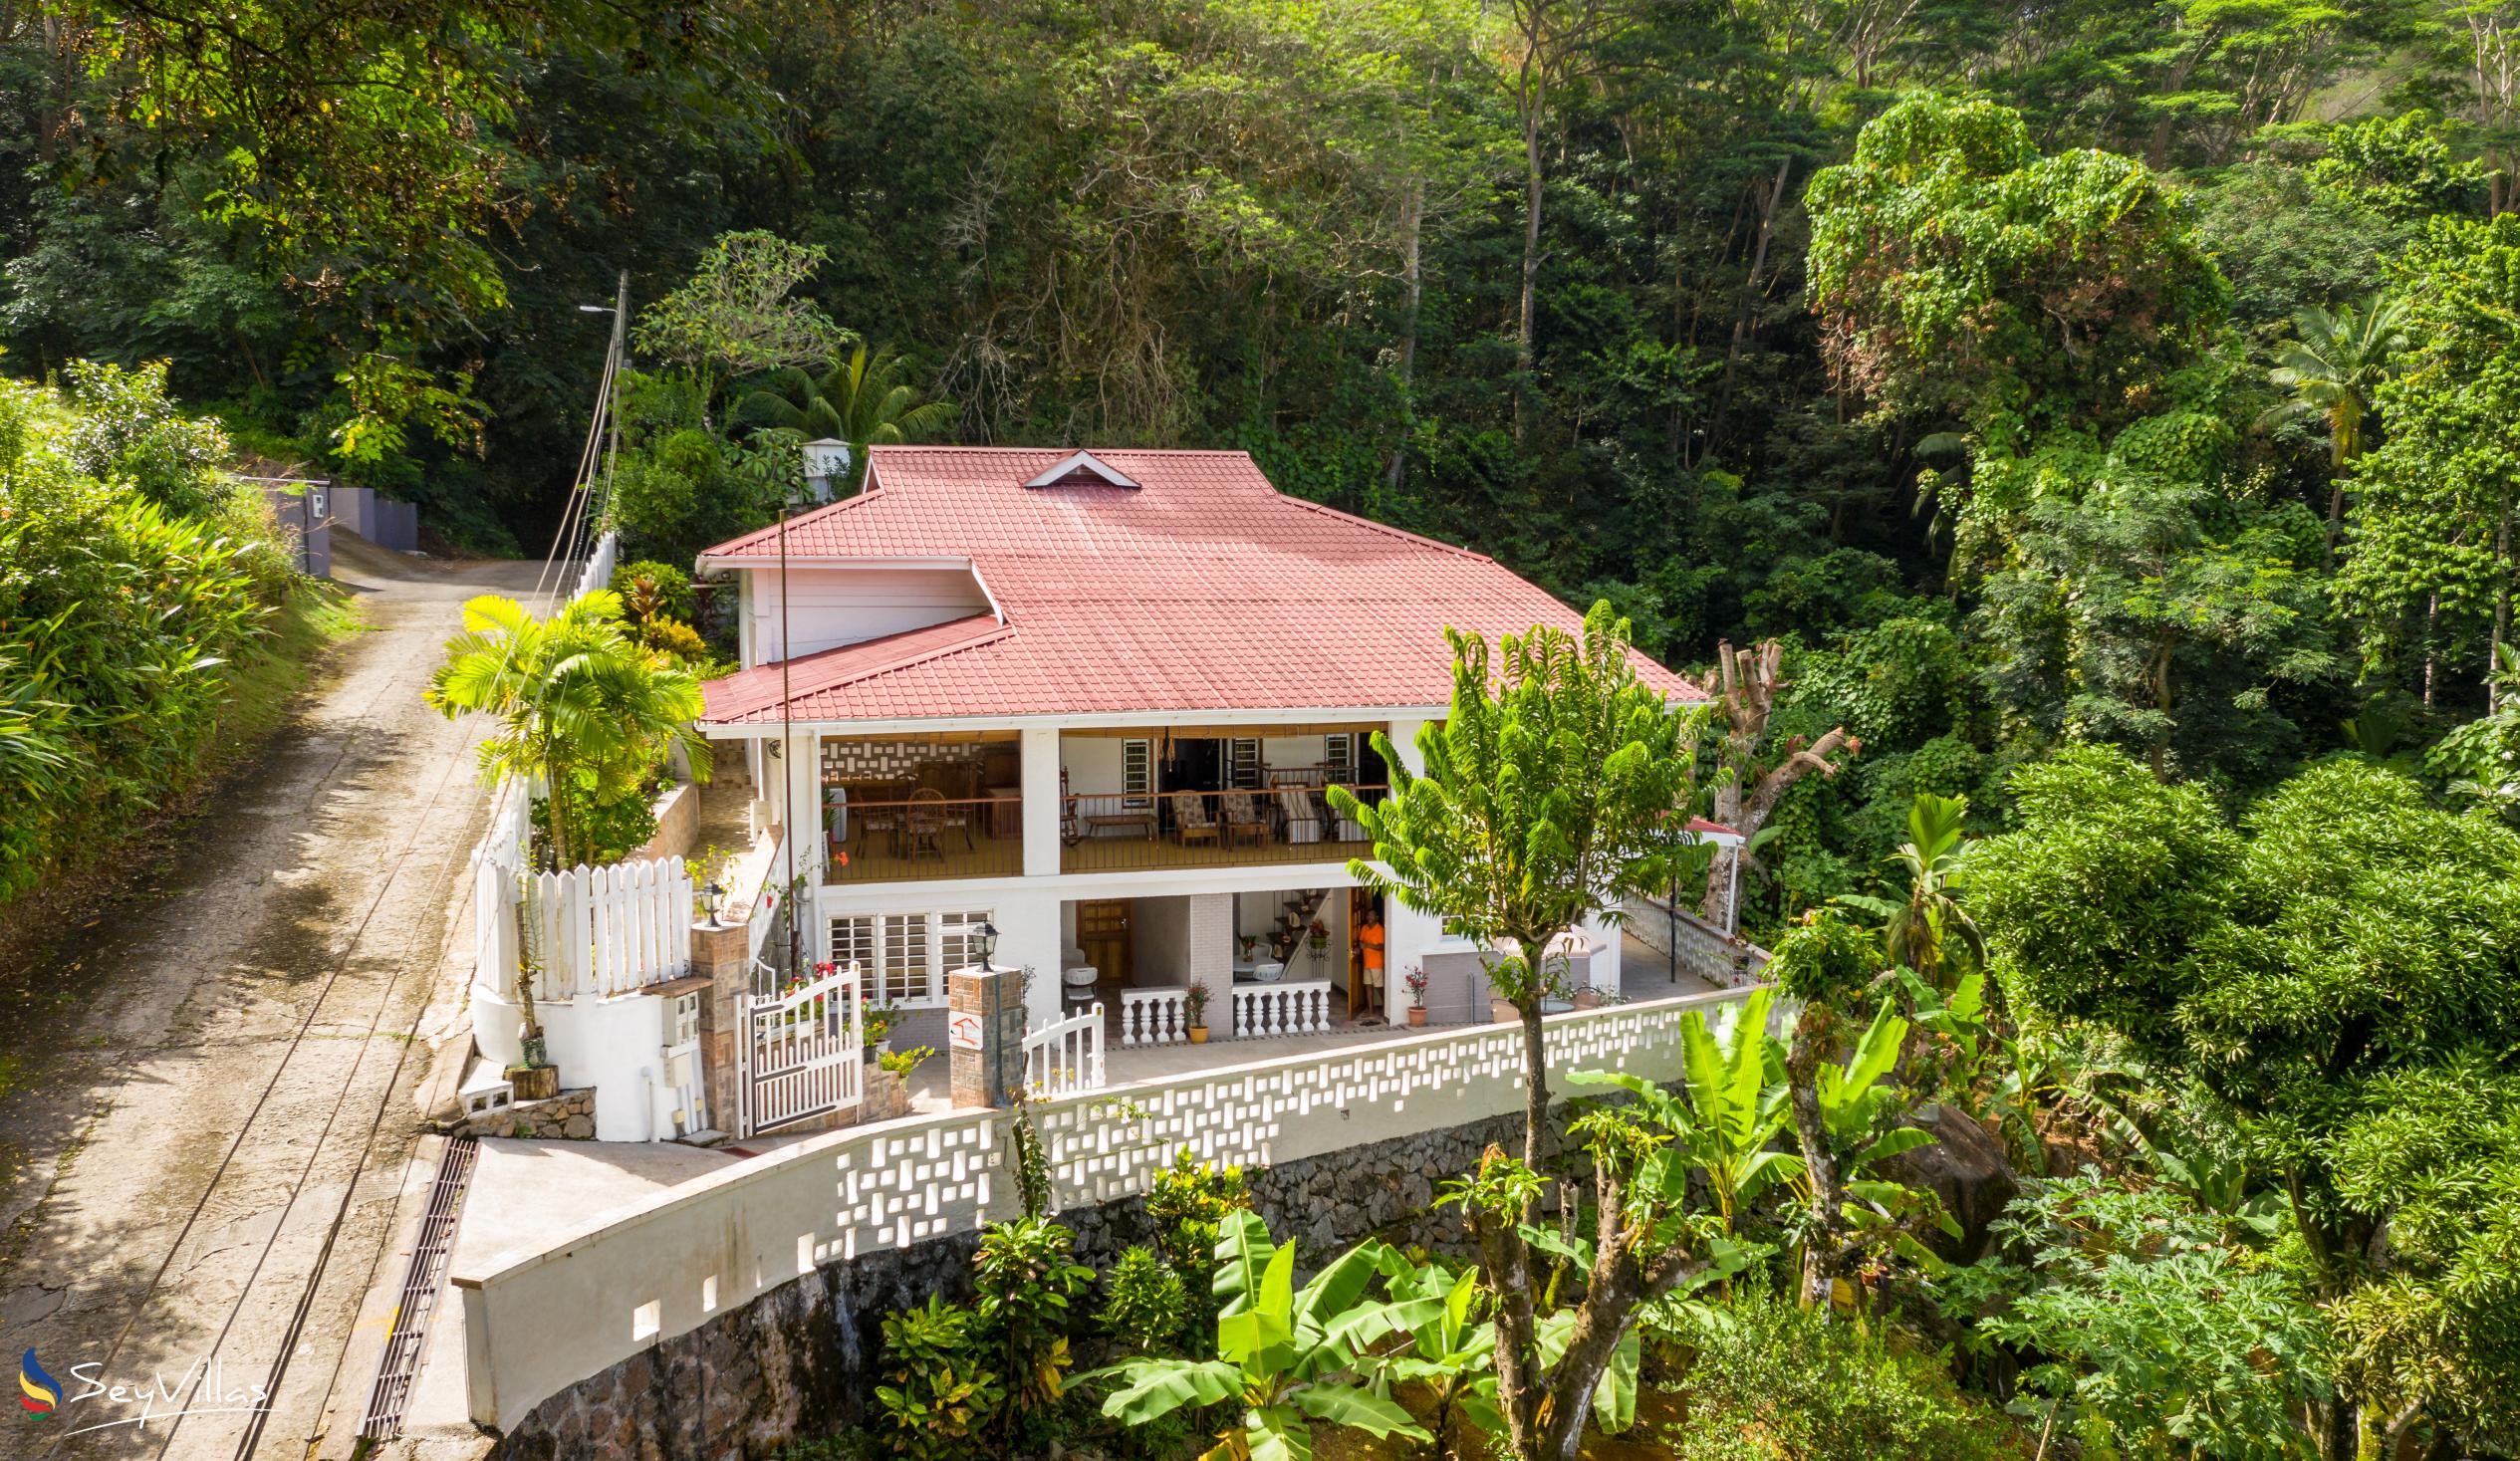 Foto 3: Jane's Serenity Guesthouse - Extérieur - Mahé (Seychelles)